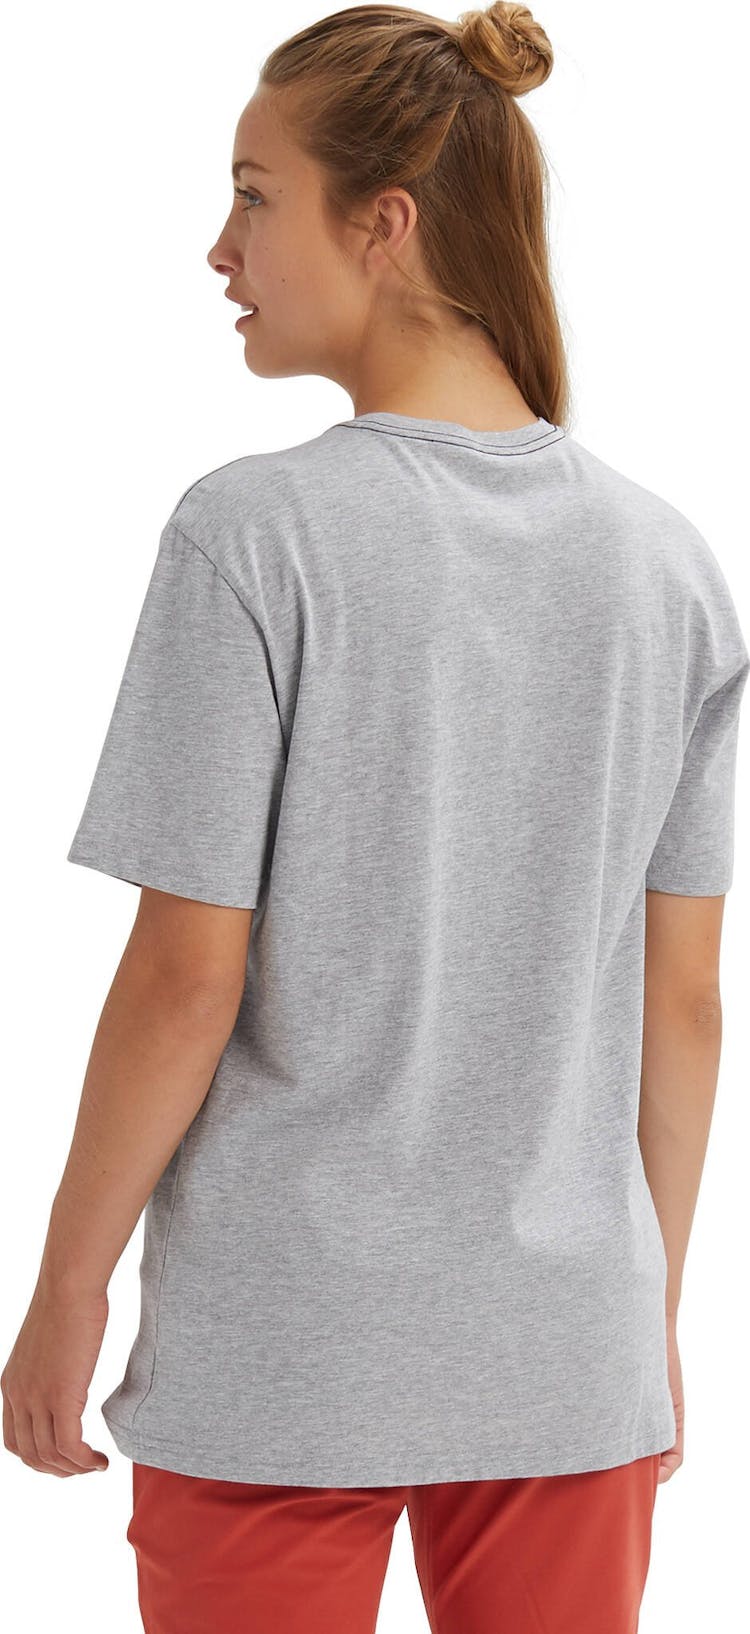 Numéro de l'image de la galerie de produits 2 pour le produit T-shirt à manches courtes Underhill - Unisexe